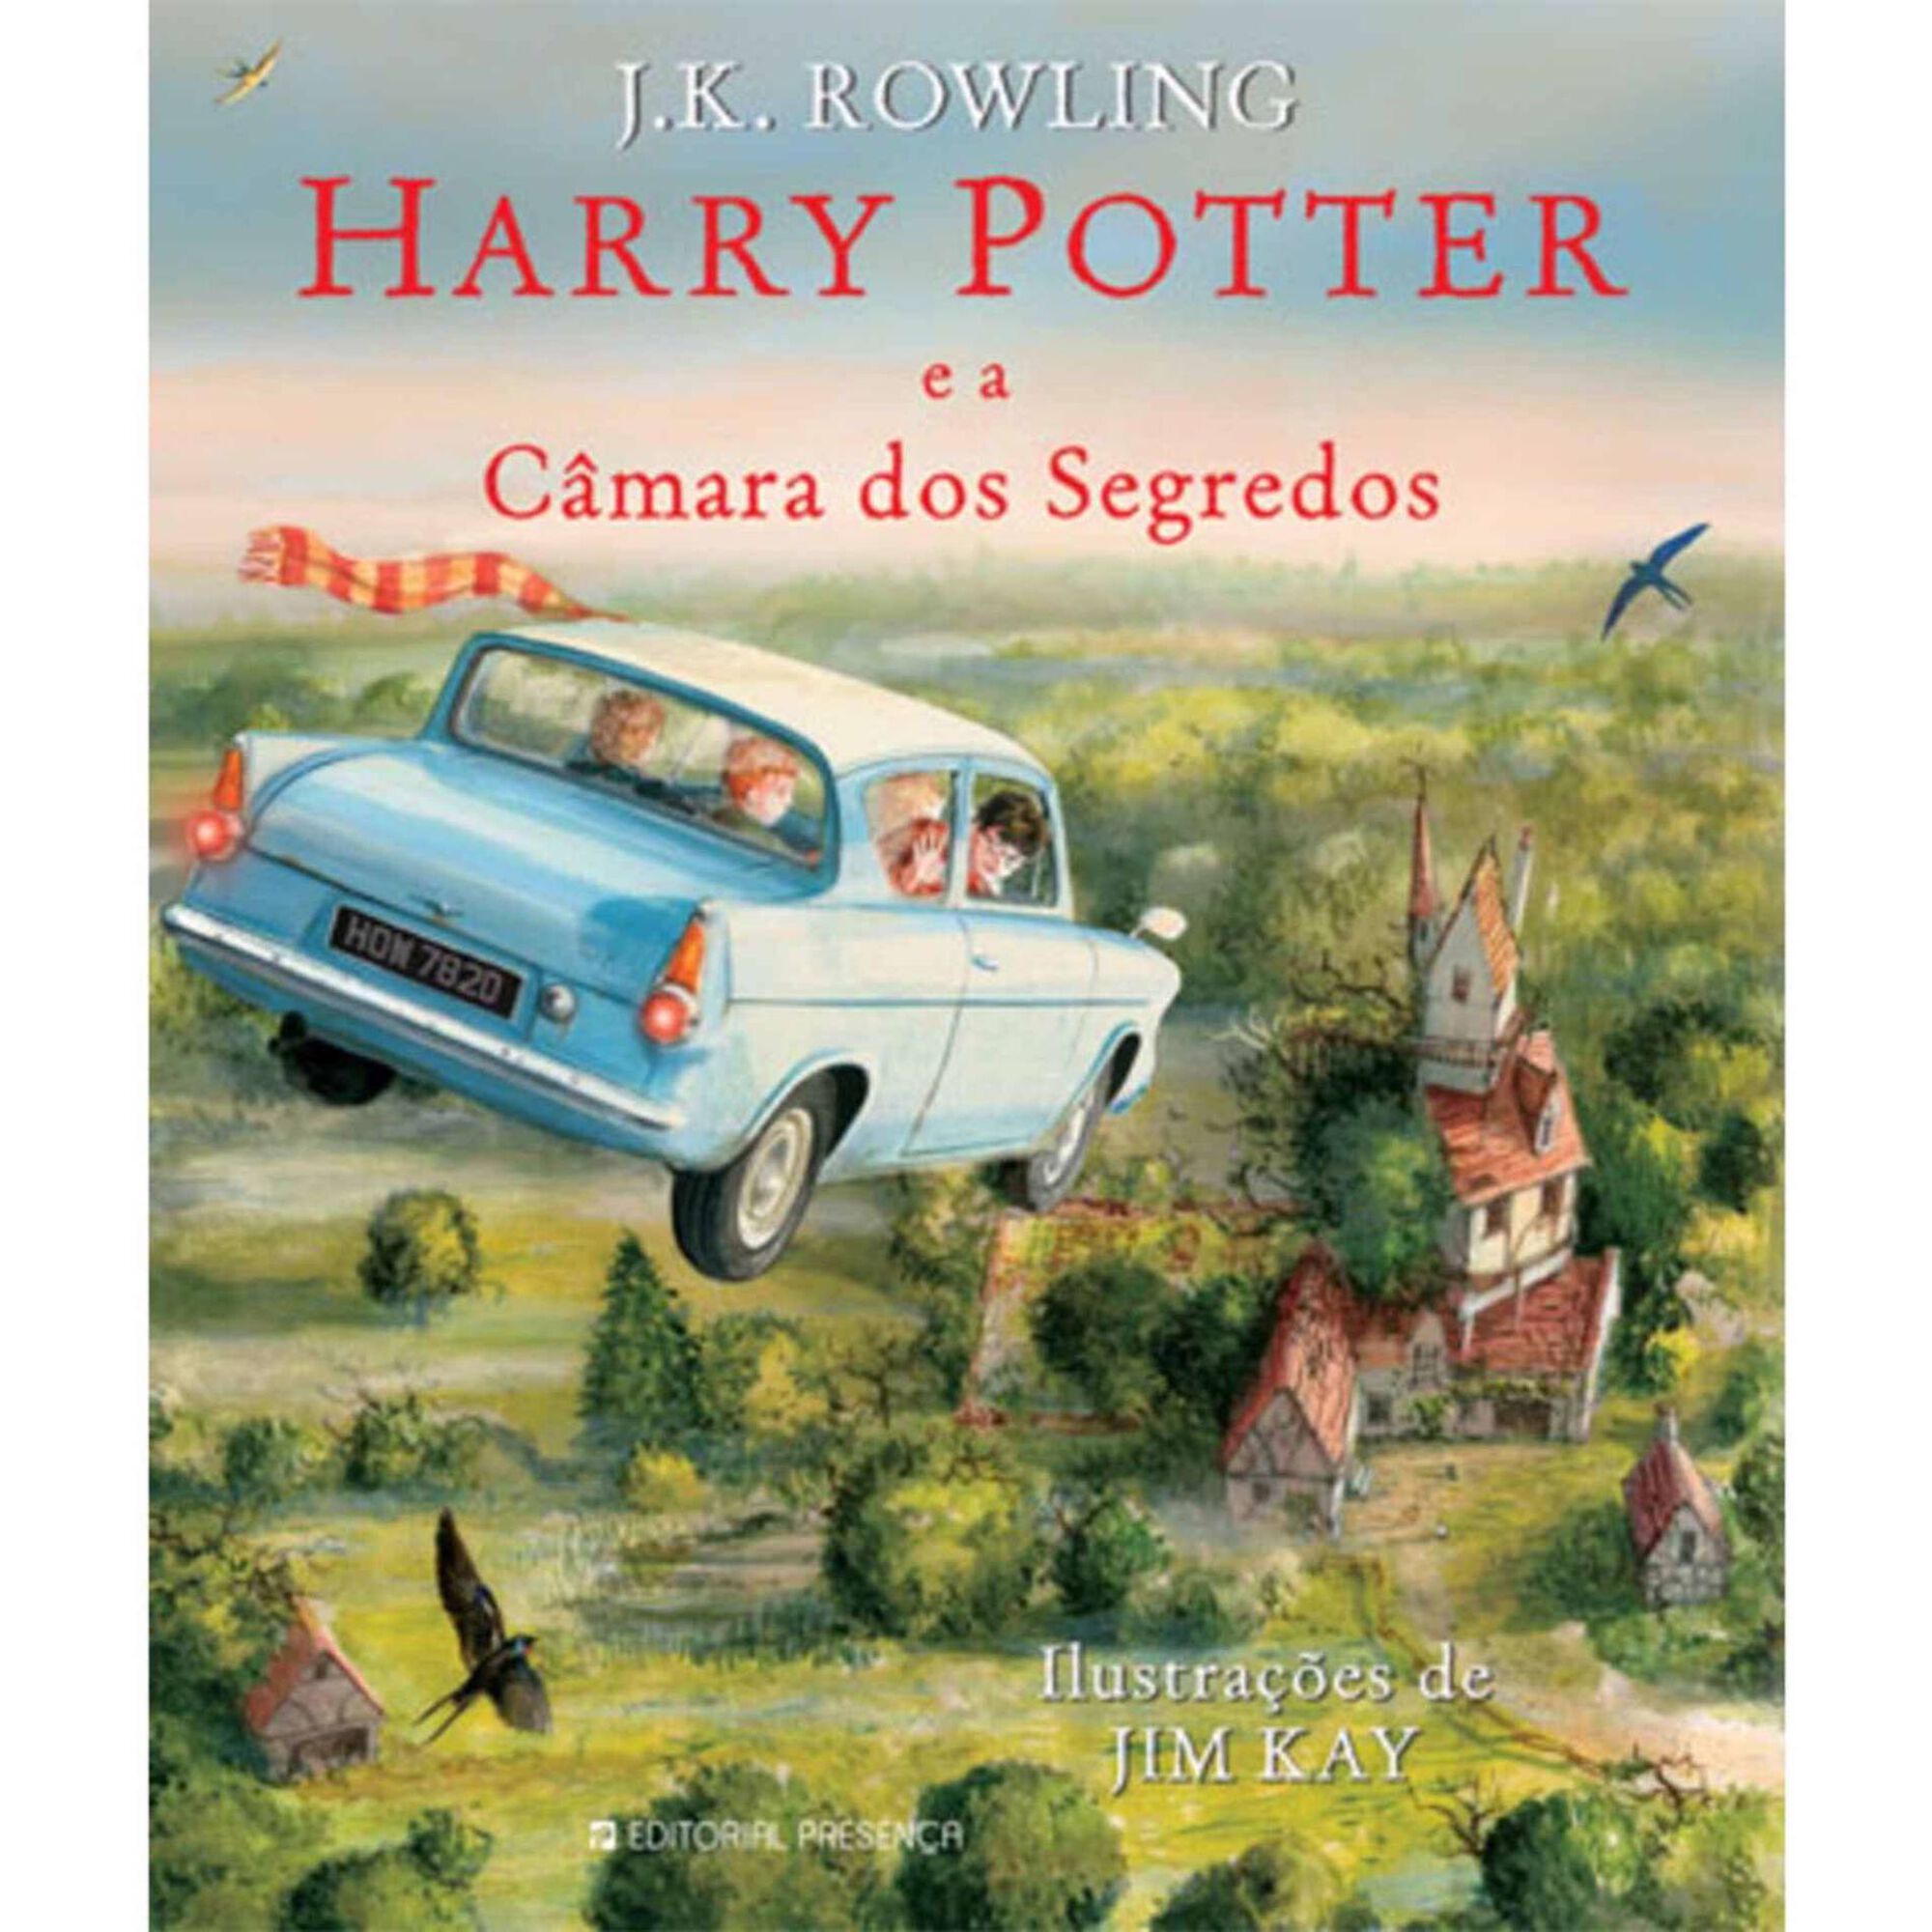 Harry Potter e a Câmara dos Segredos - Edição Ilustrada